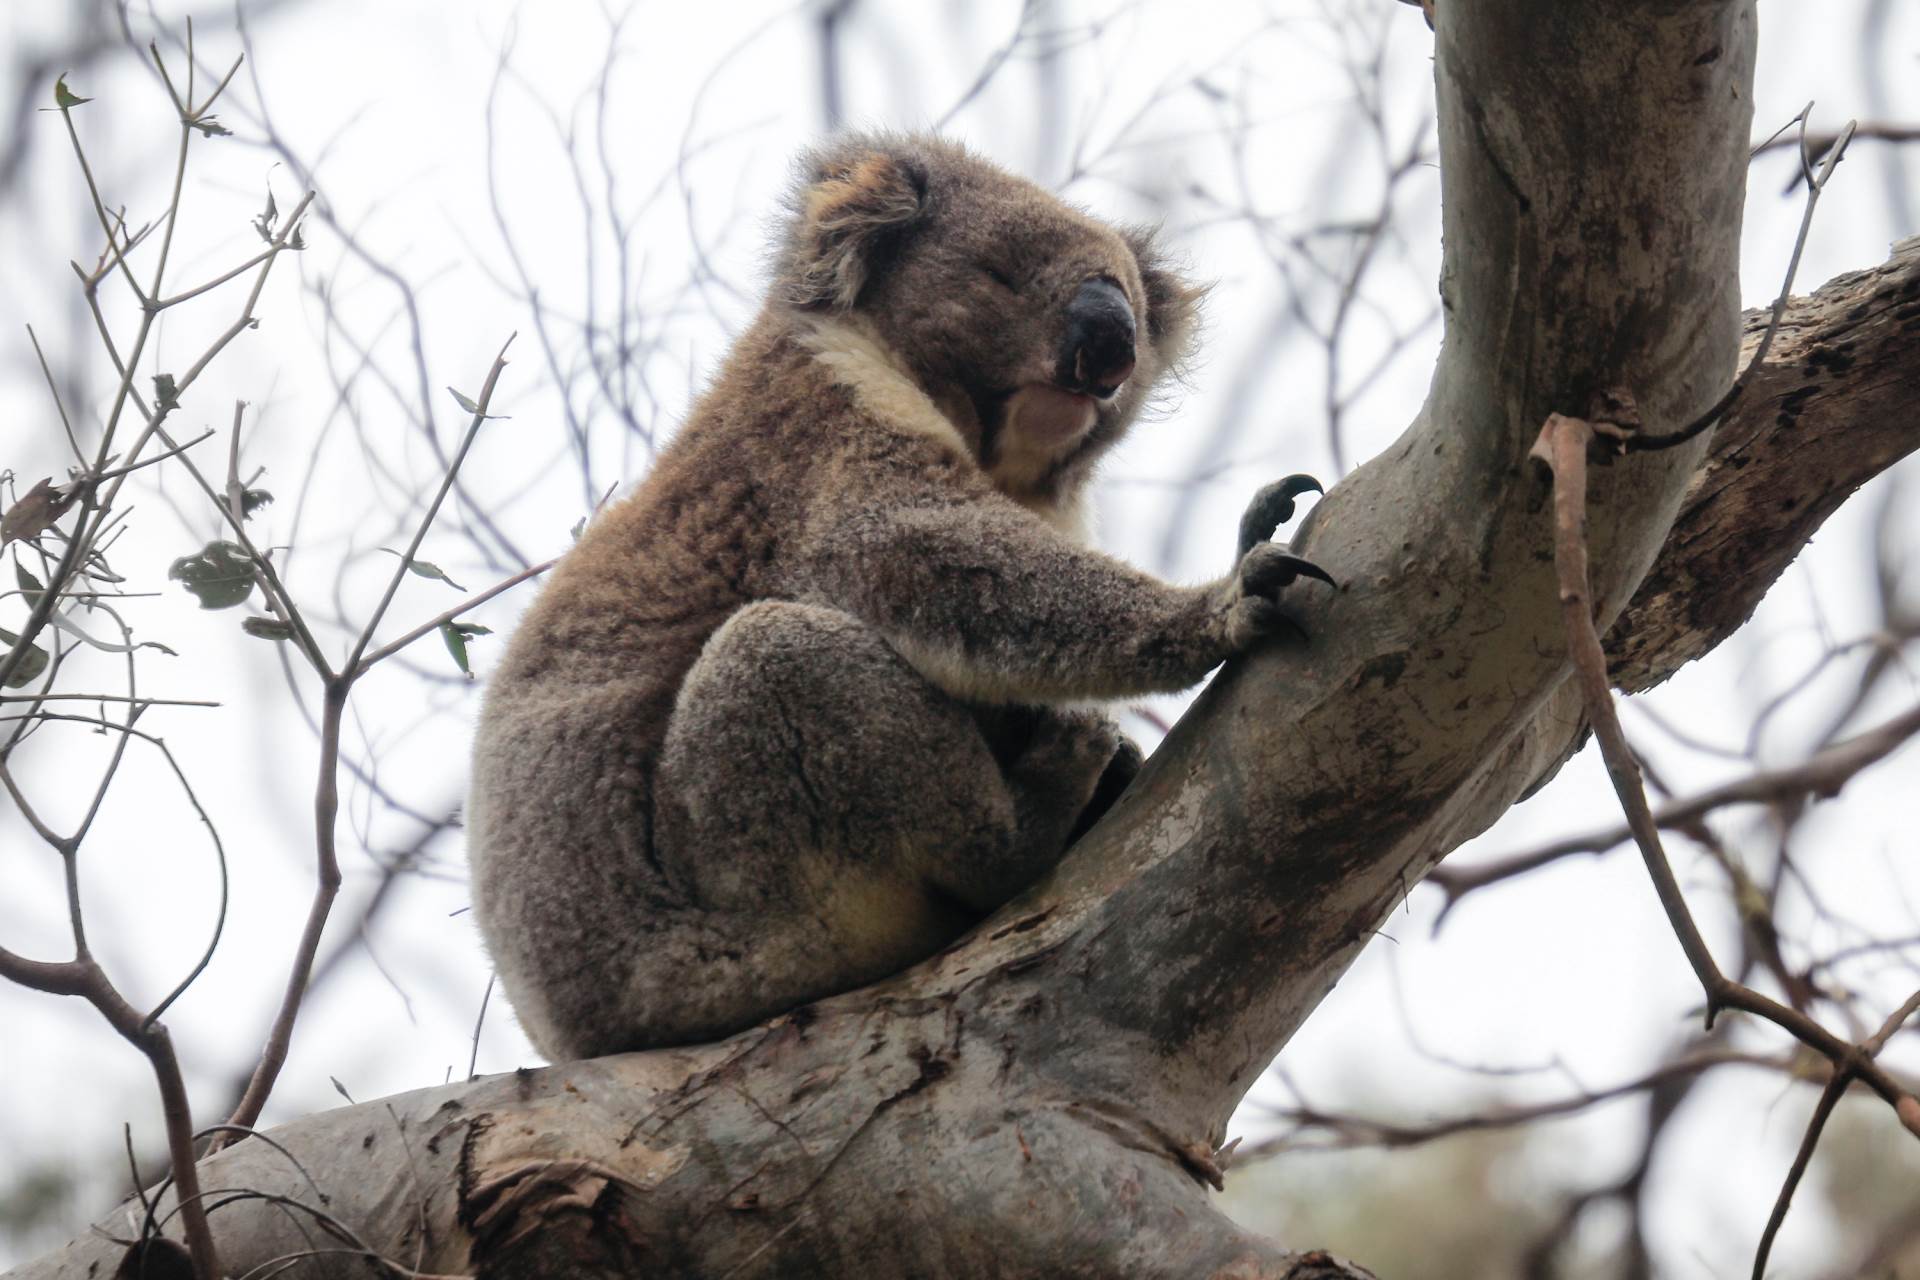  Australija: Koale izlaze iz bolnice i odlaze kući - u divljinu 